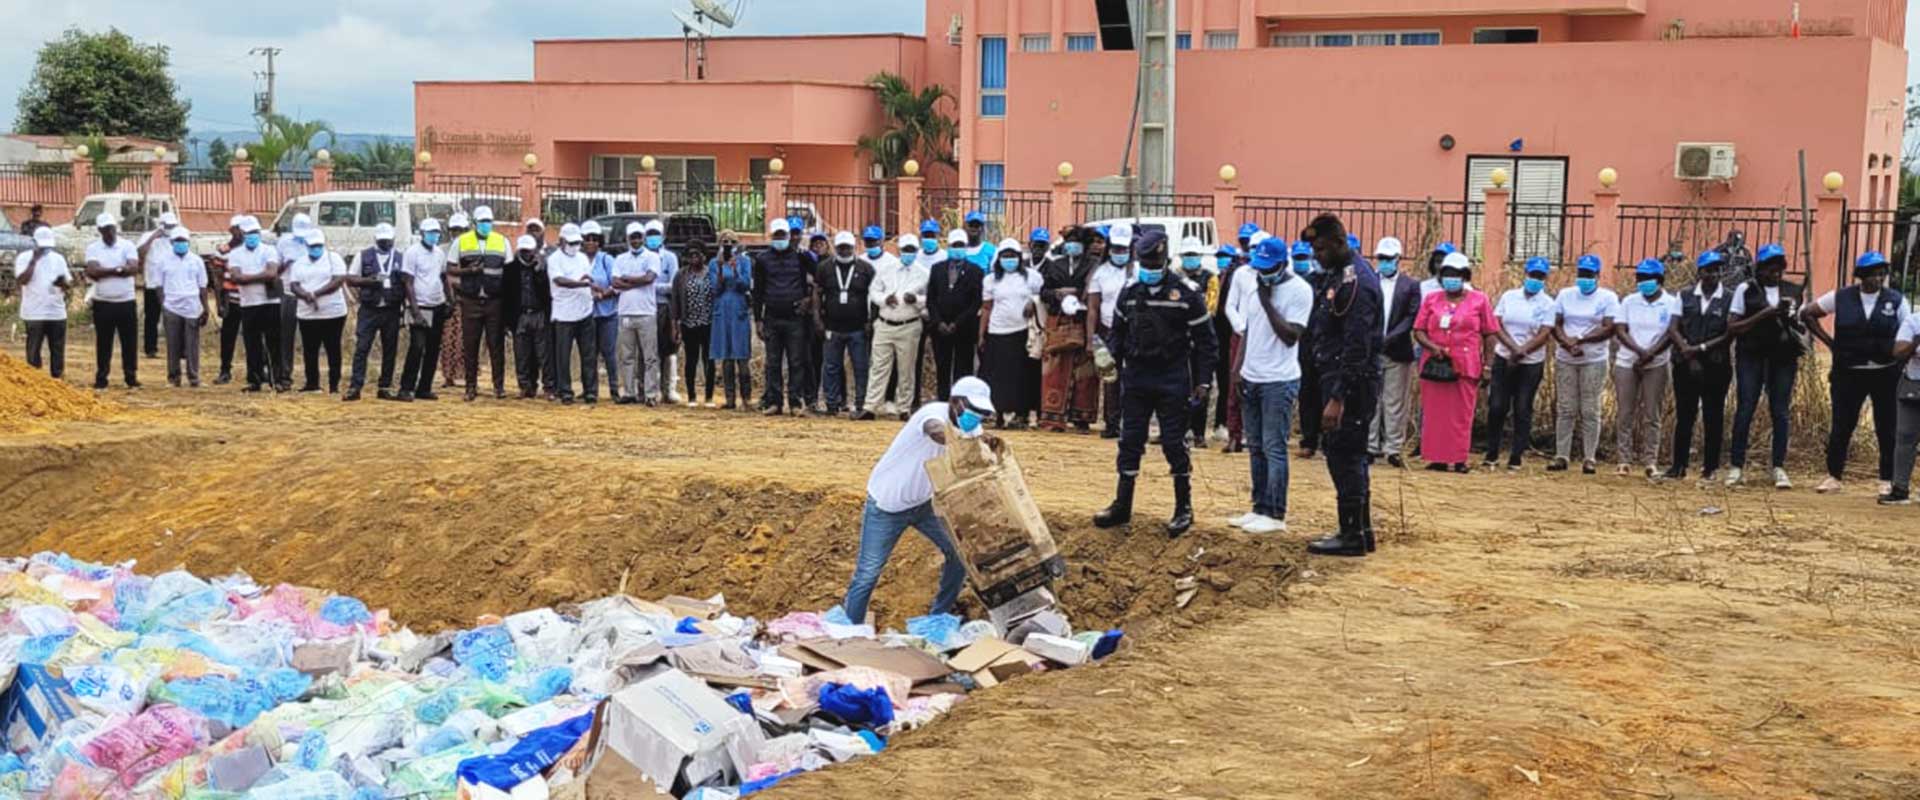 Boletins de voto das eleições gerais de 24 de Agosto de 2022 incinerados em Cabinda